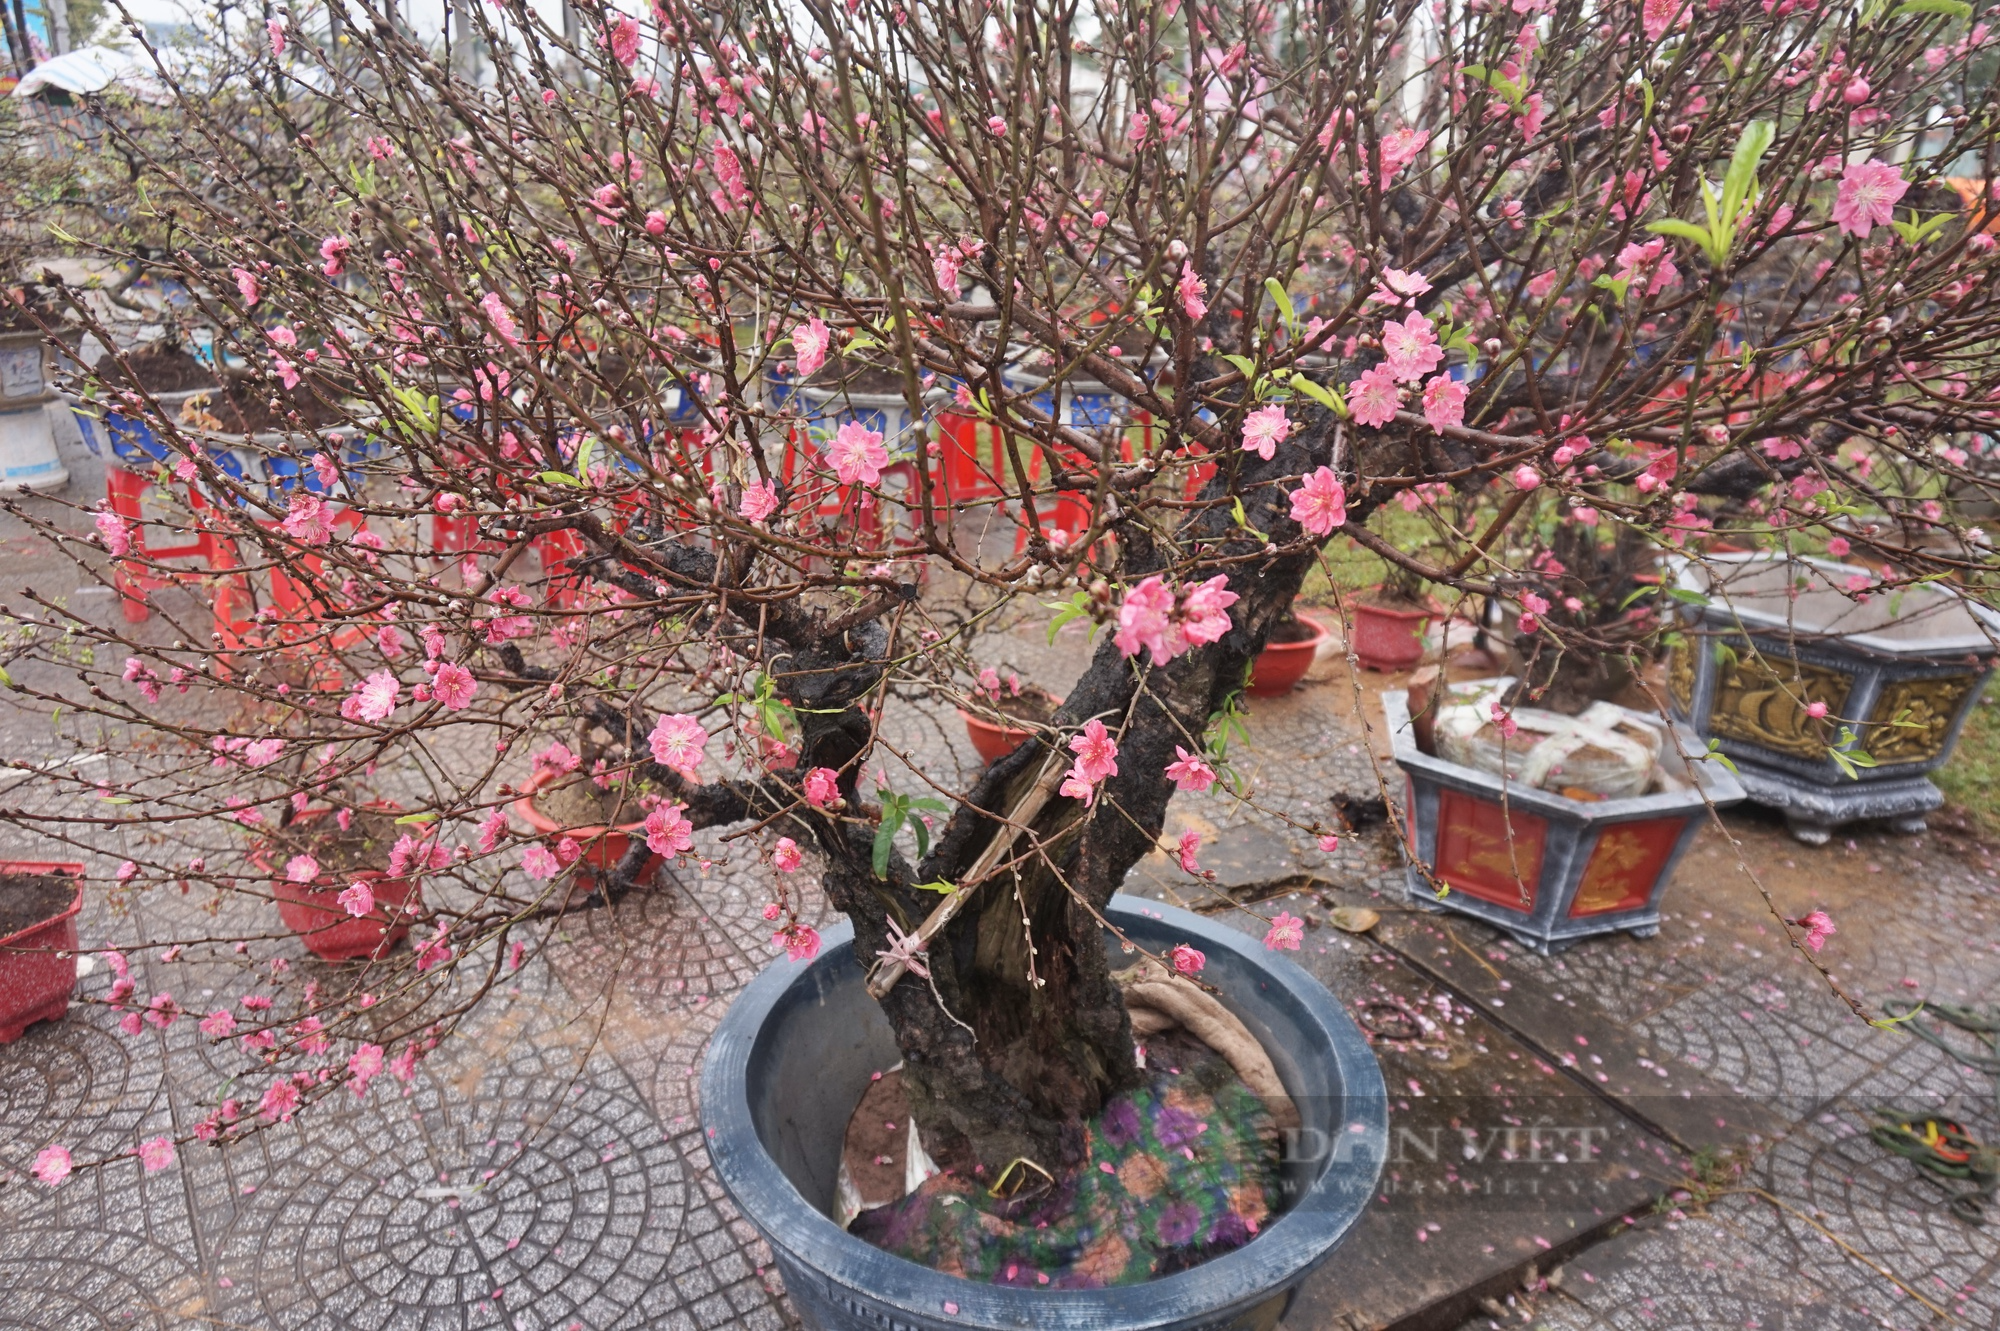 Ngắm cây quýt, bưởi cổ thụ độc nhất tại chợ hoa xuân Đà Nẵng 2023 - Ảnh 9.